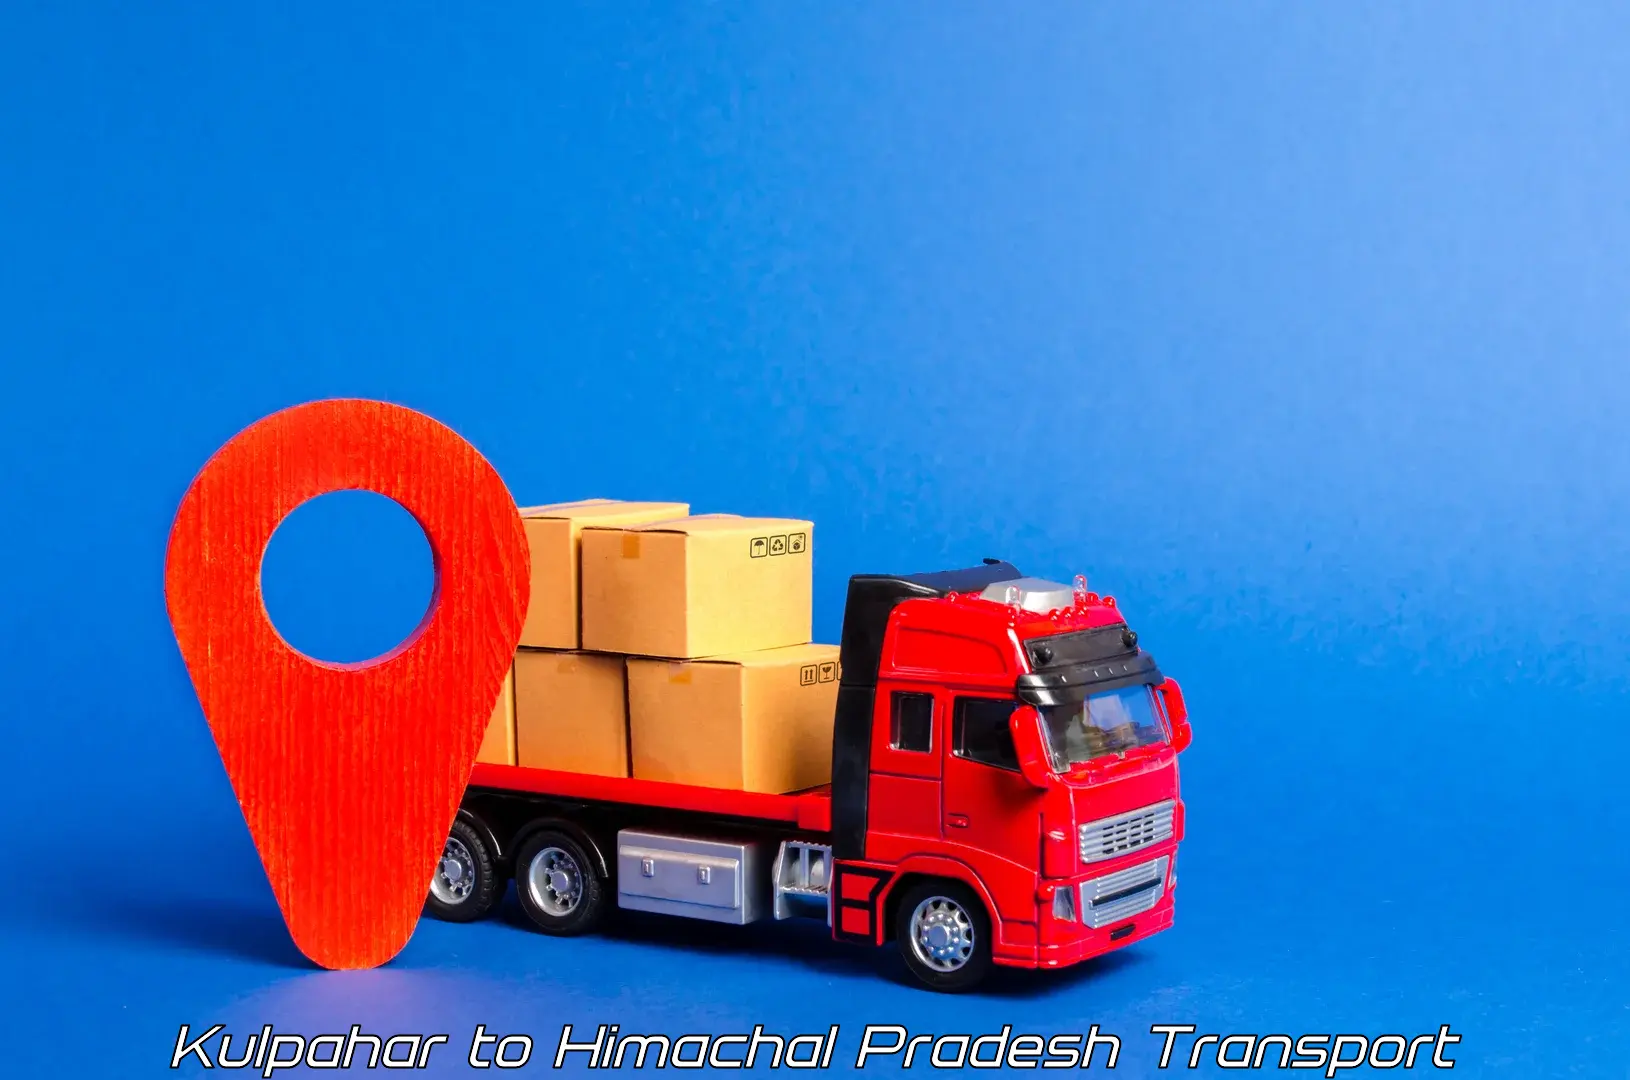 Furniture transport service Kulpahar to Palampur